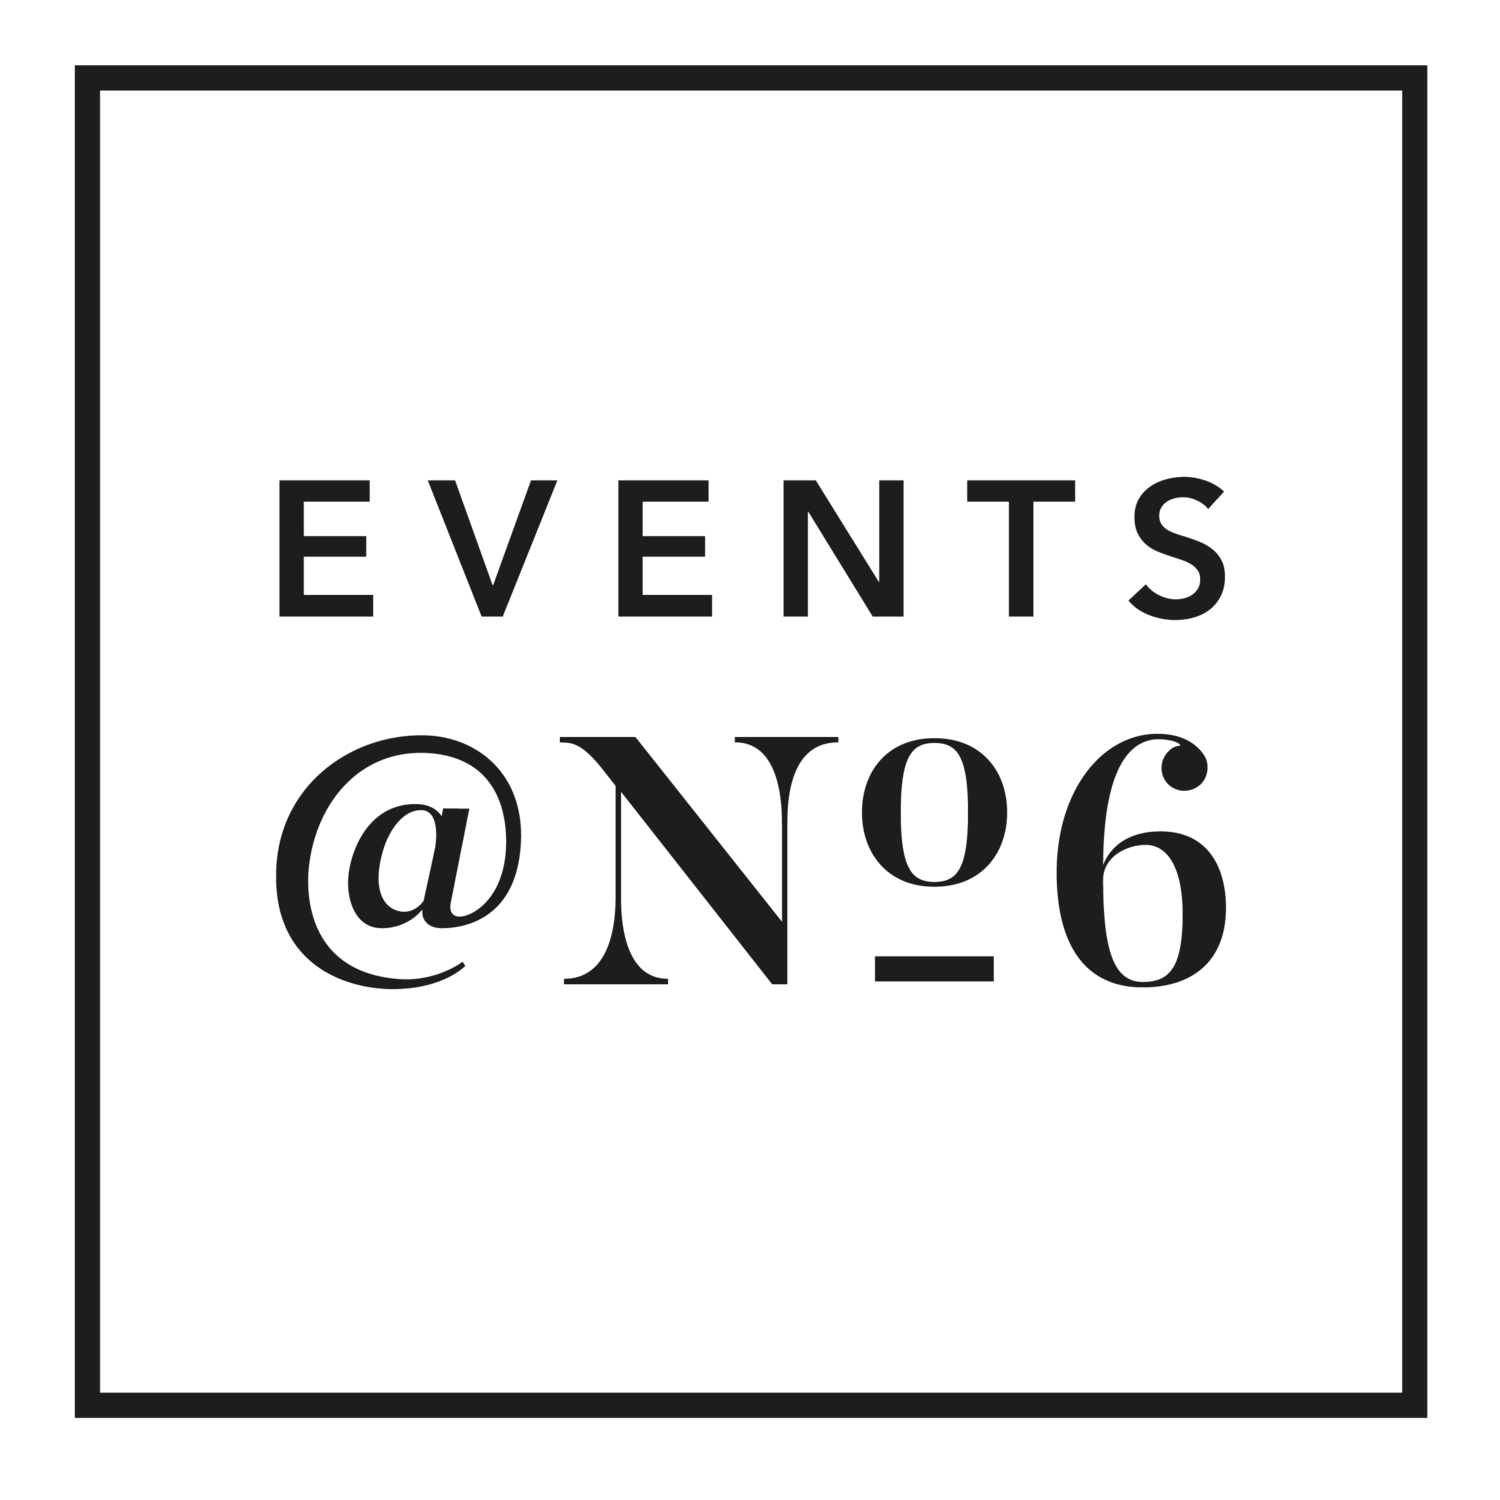 Events @ No 6